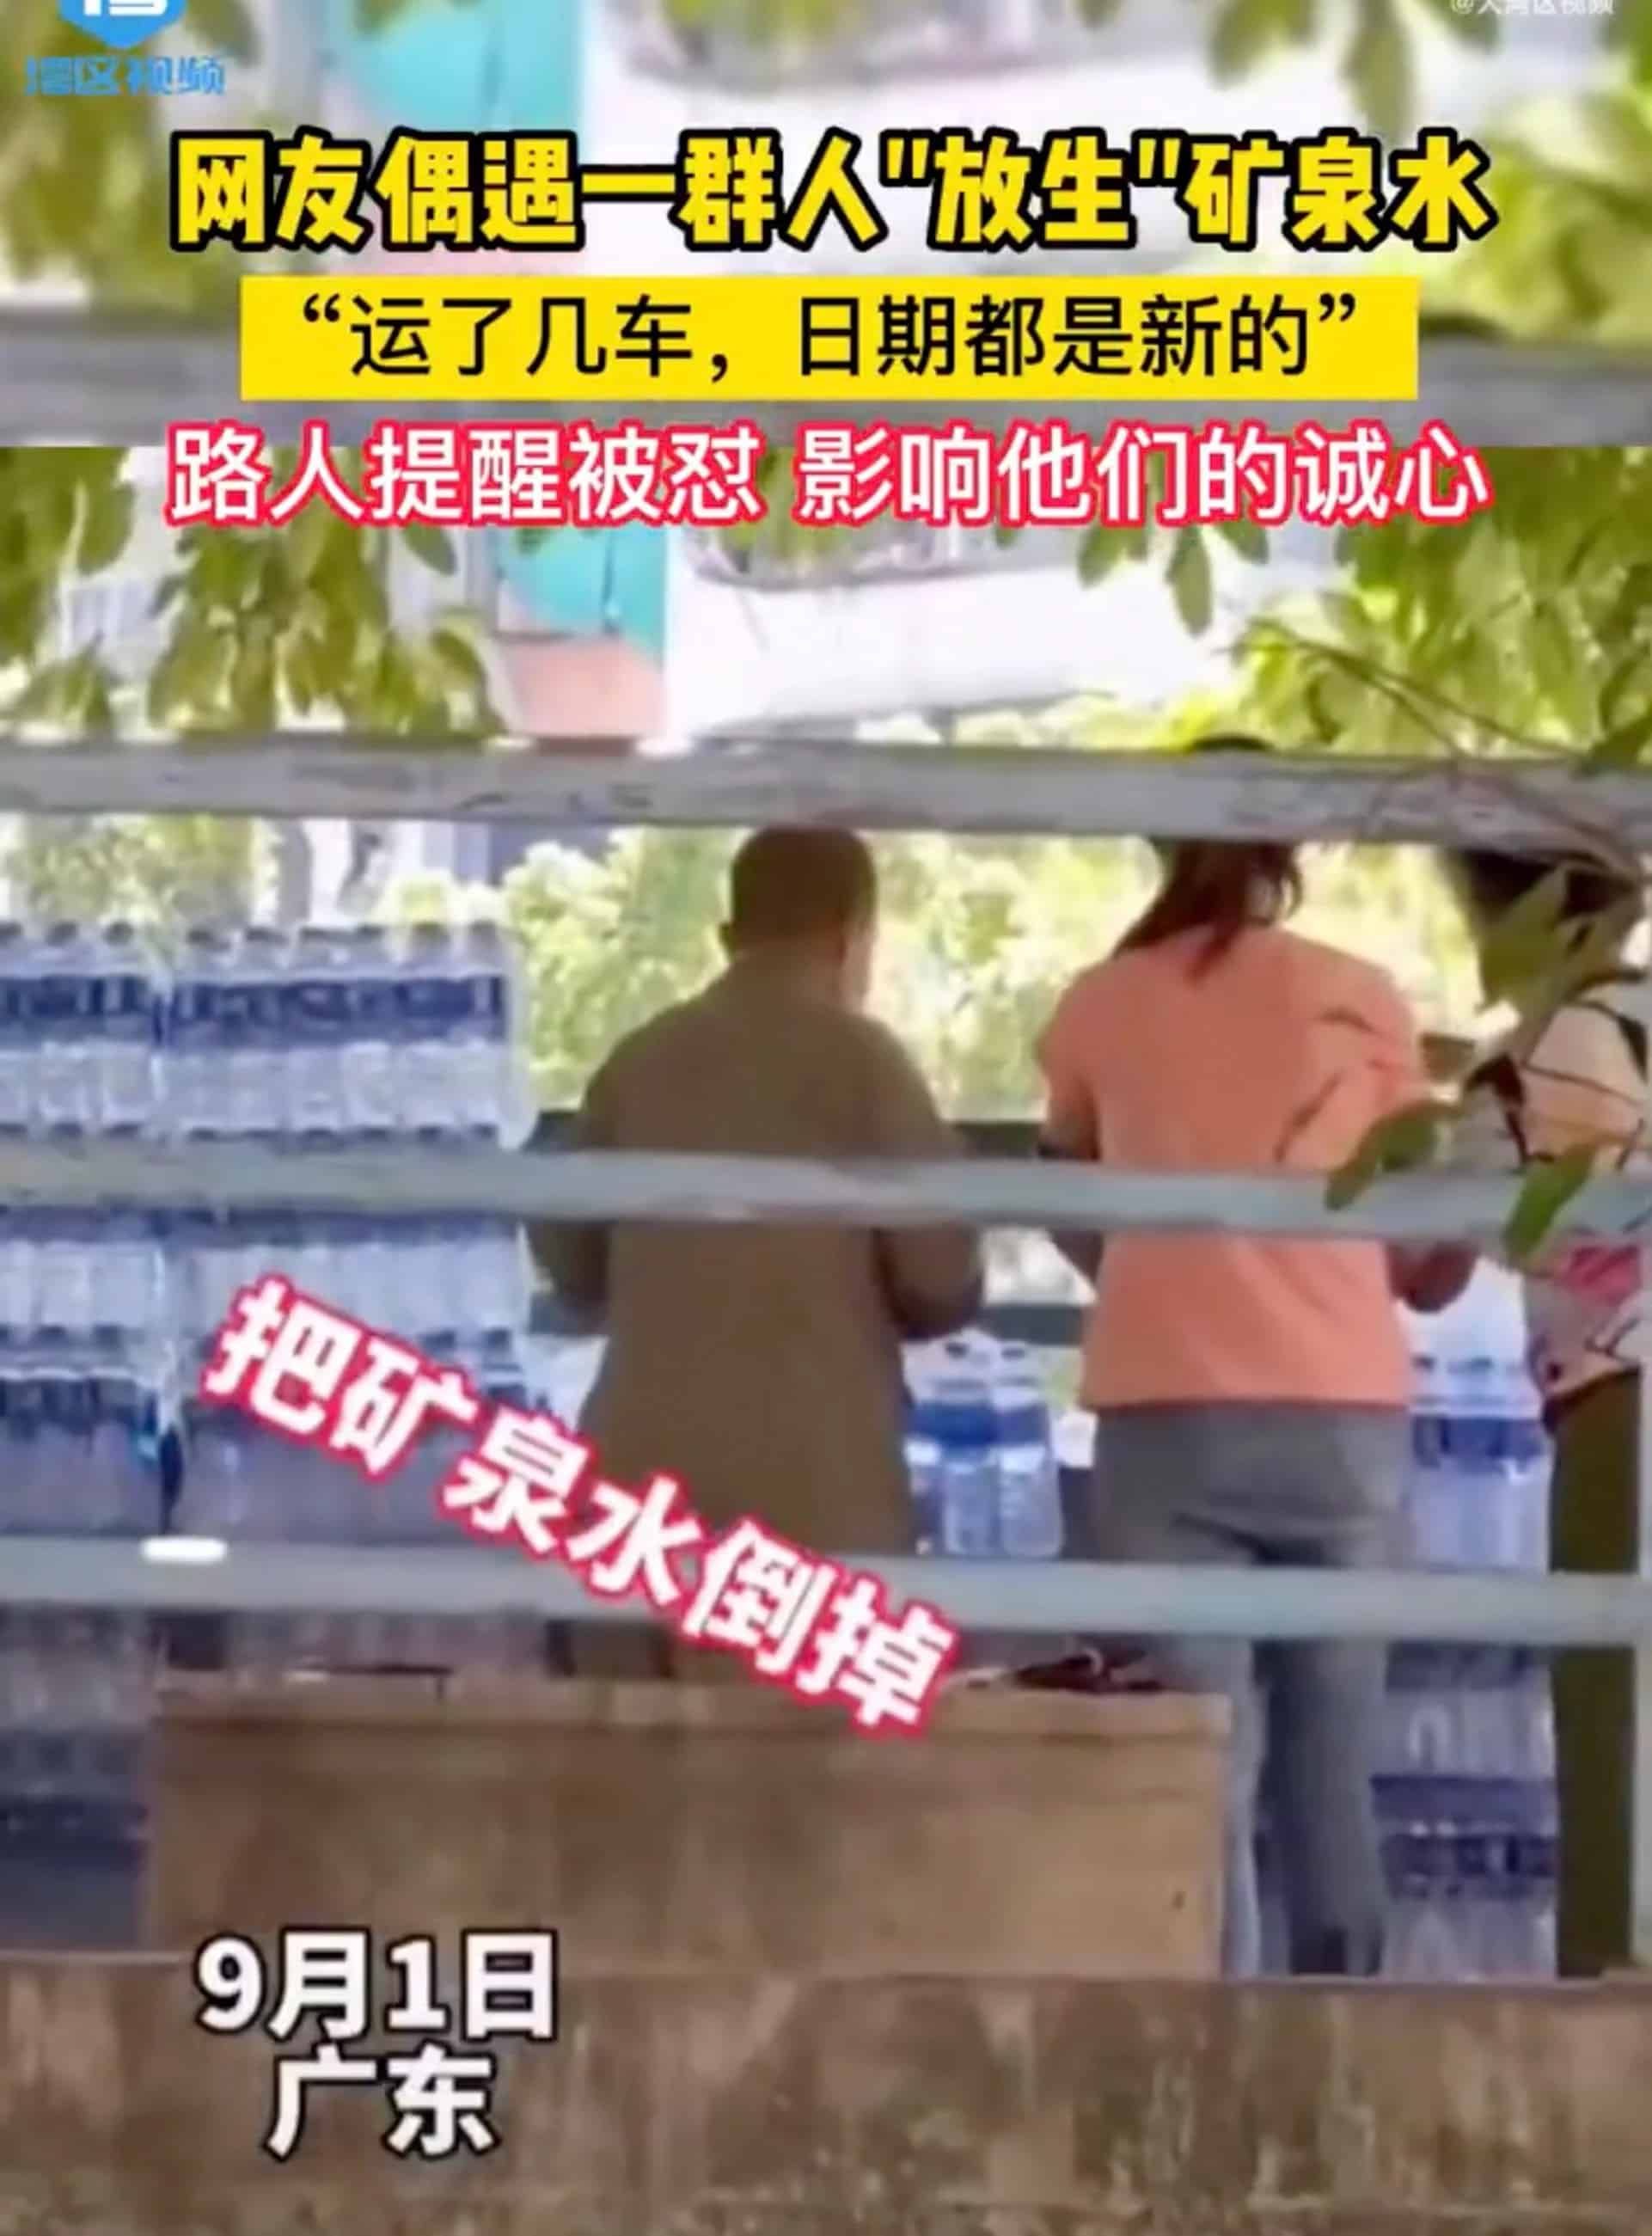 Hành động "phóng sinh" nước khoáng đóng chai để cầu sức khỏe gây tranh cãi ở Trung Quốc hồi đầu tháng 9. Ảnh: SCMP